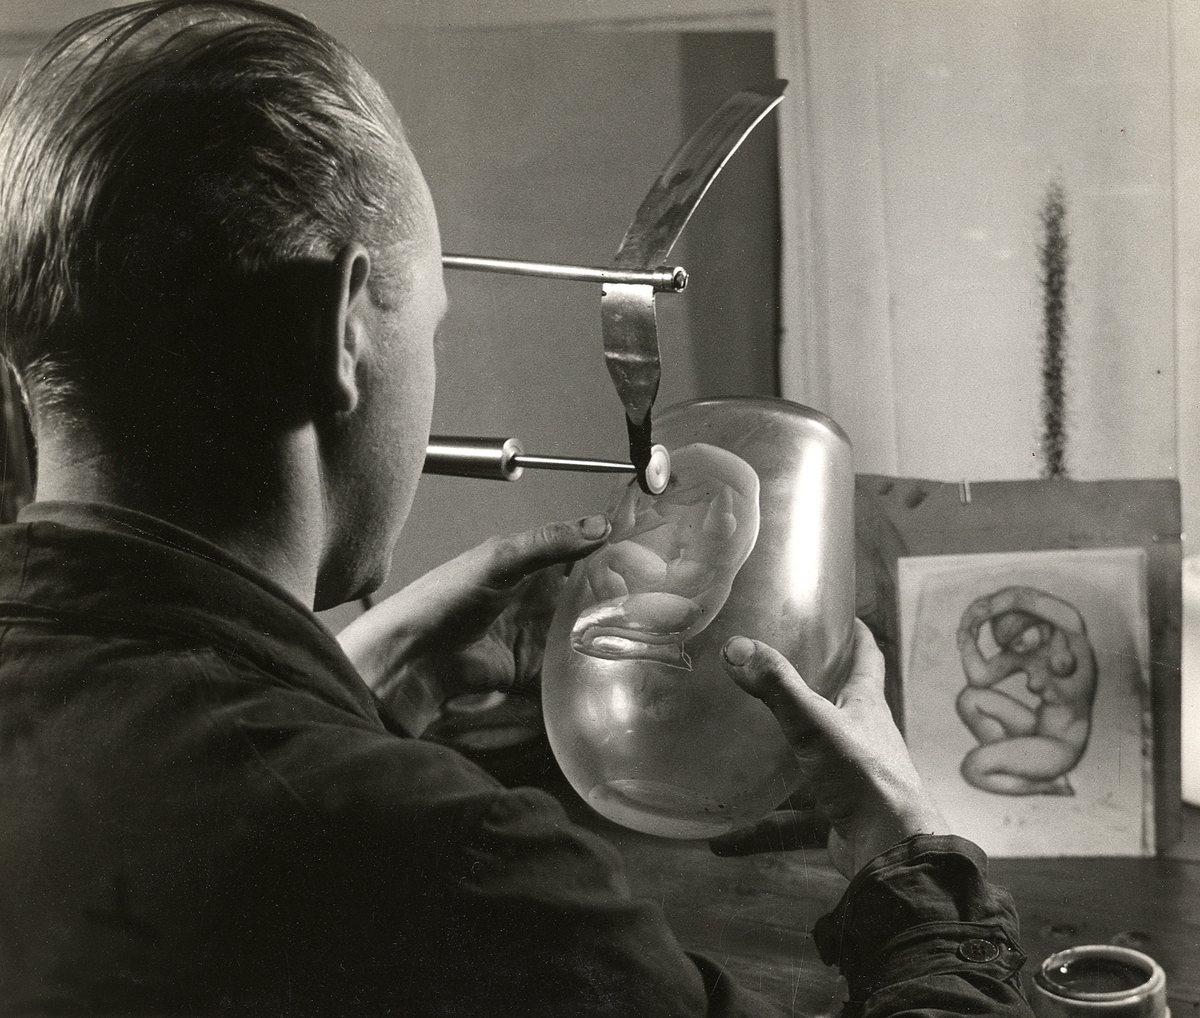 Orrefors glasbruk.
Gravör Ernst Åberg graverar ett motiv på en vas.